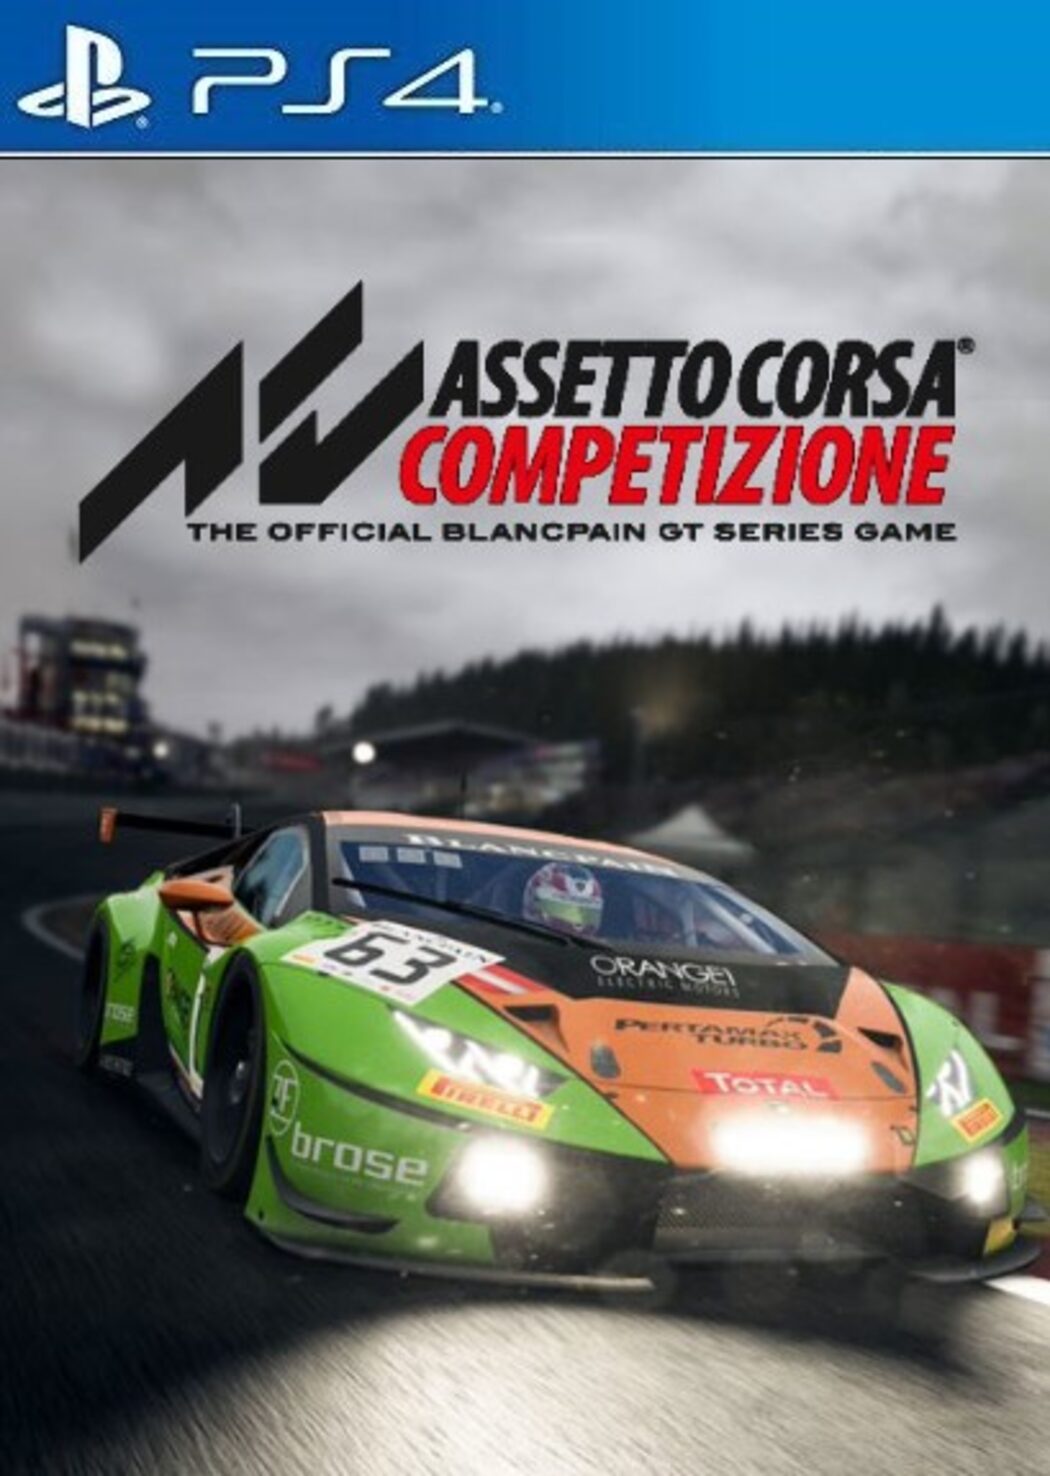 Buy Assetto Corsa Competizione Key for PSN Cheaper!